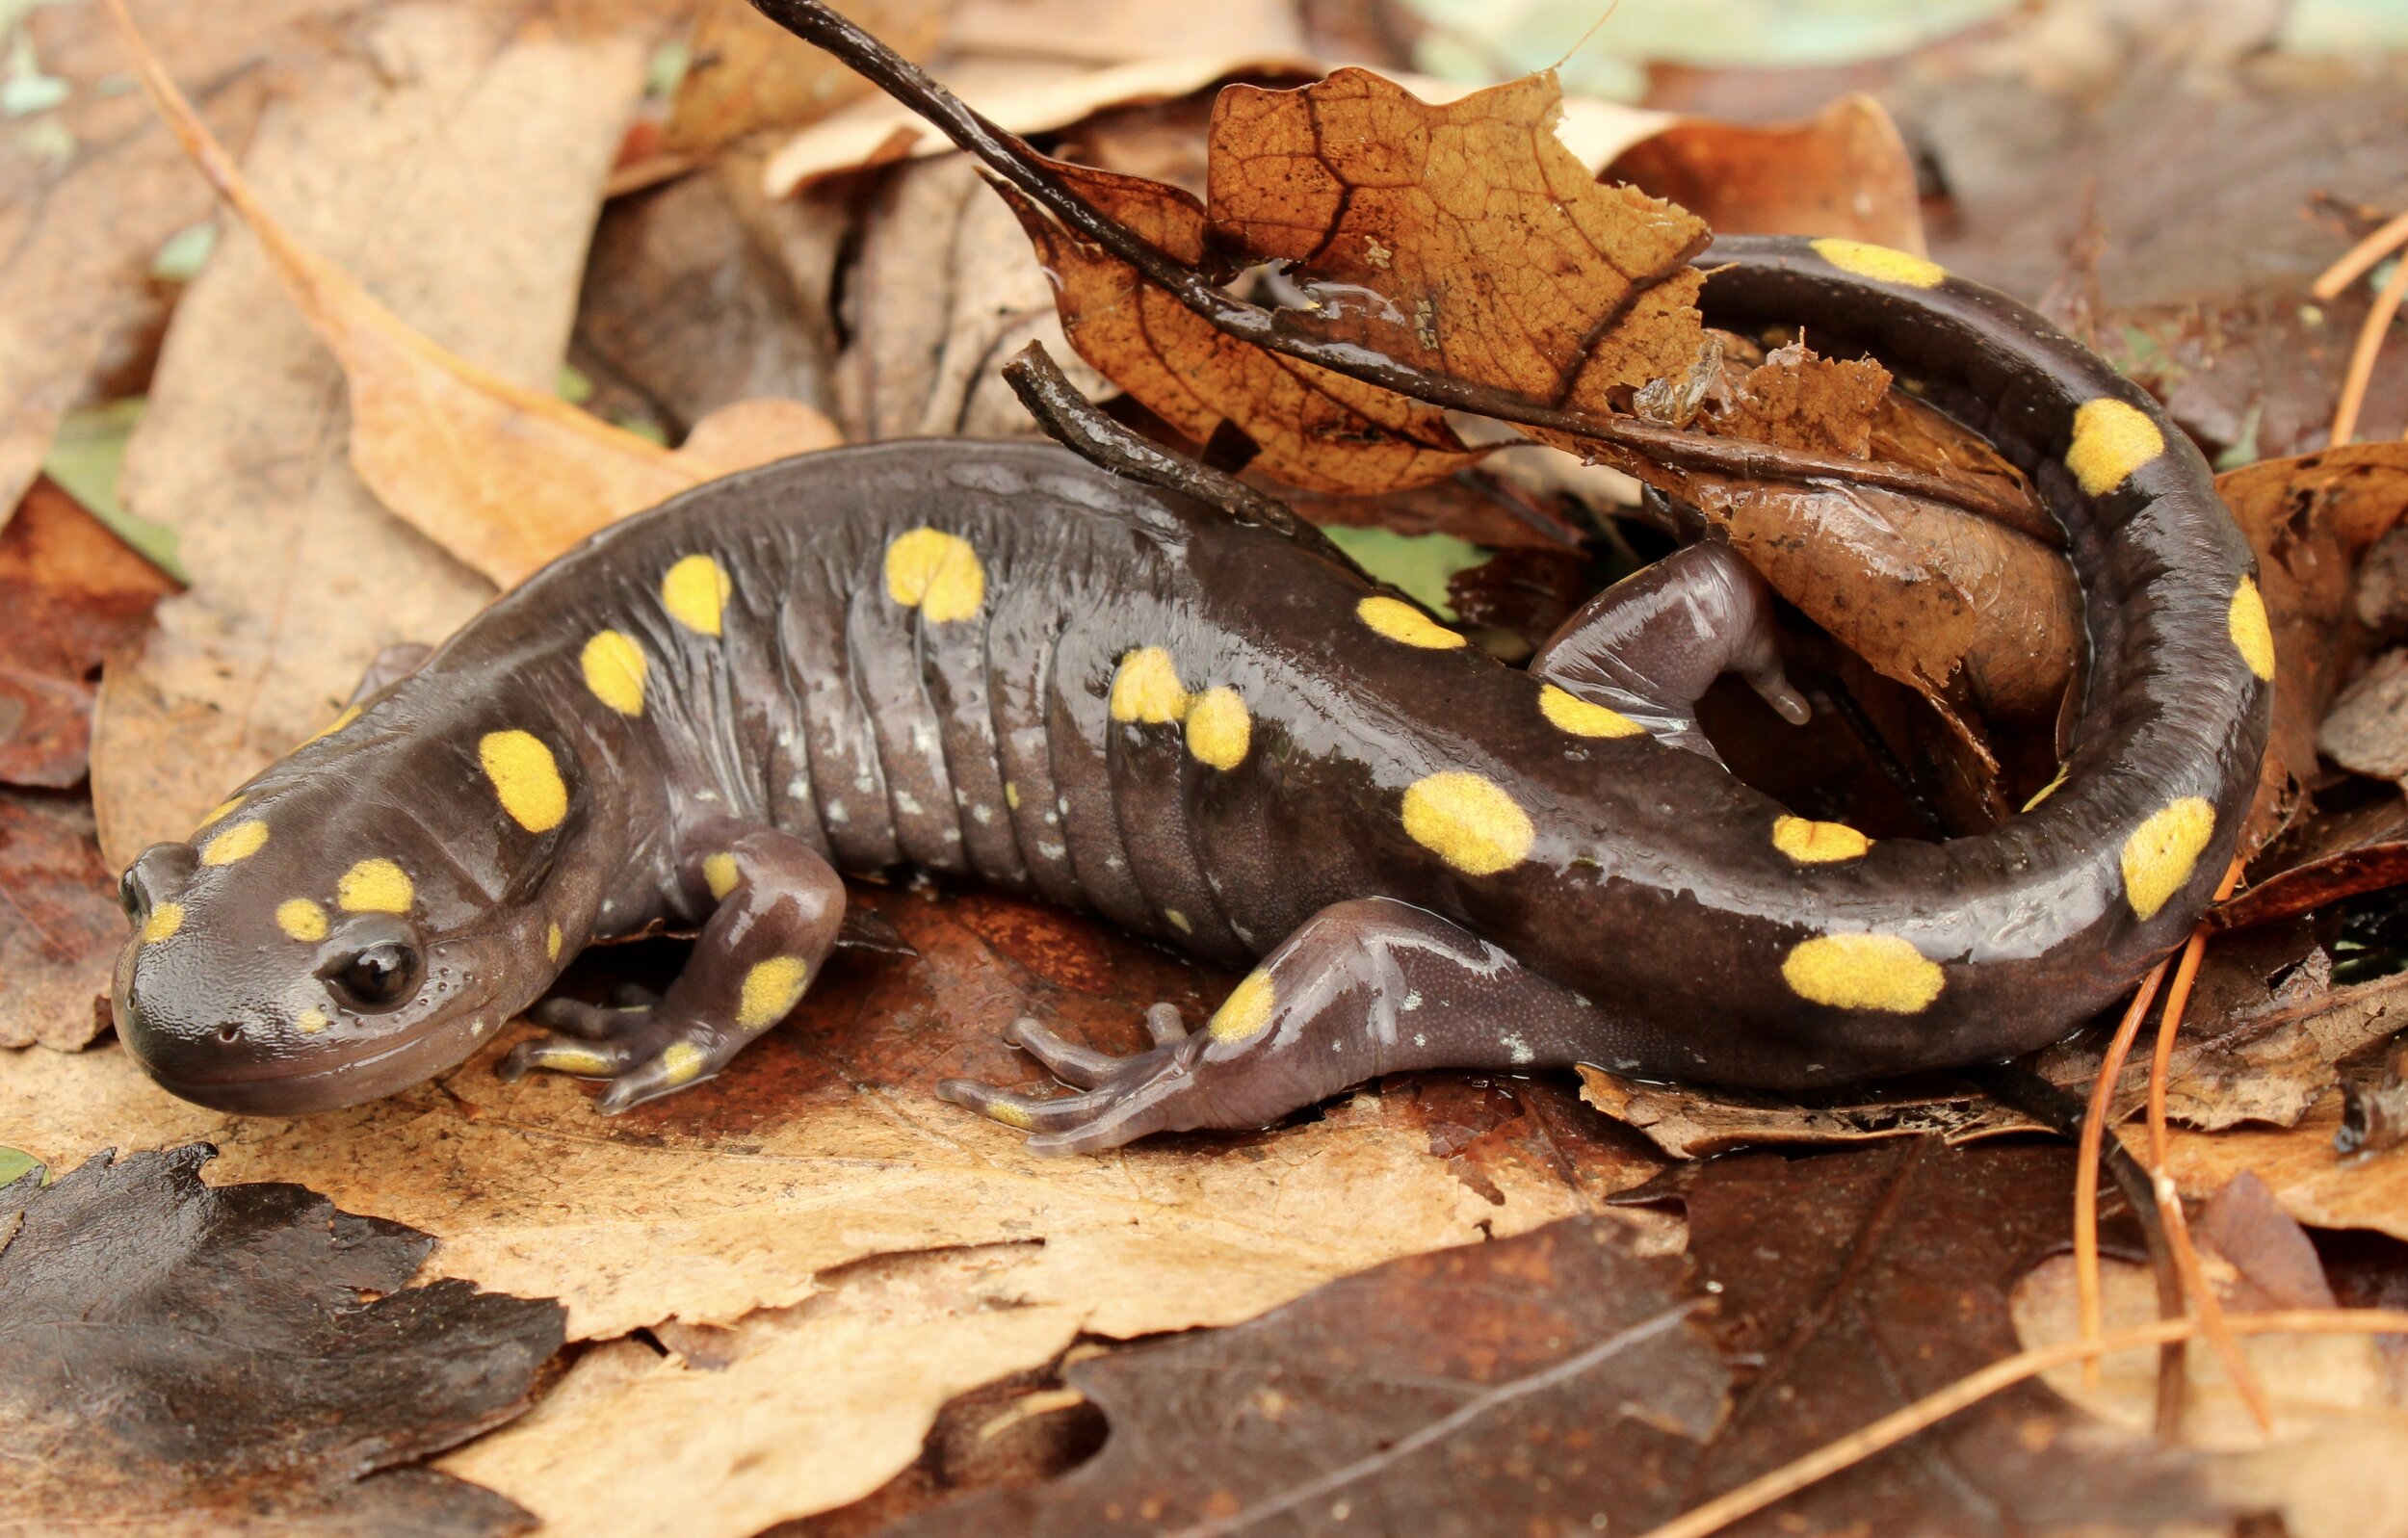 Adult spotted salamander